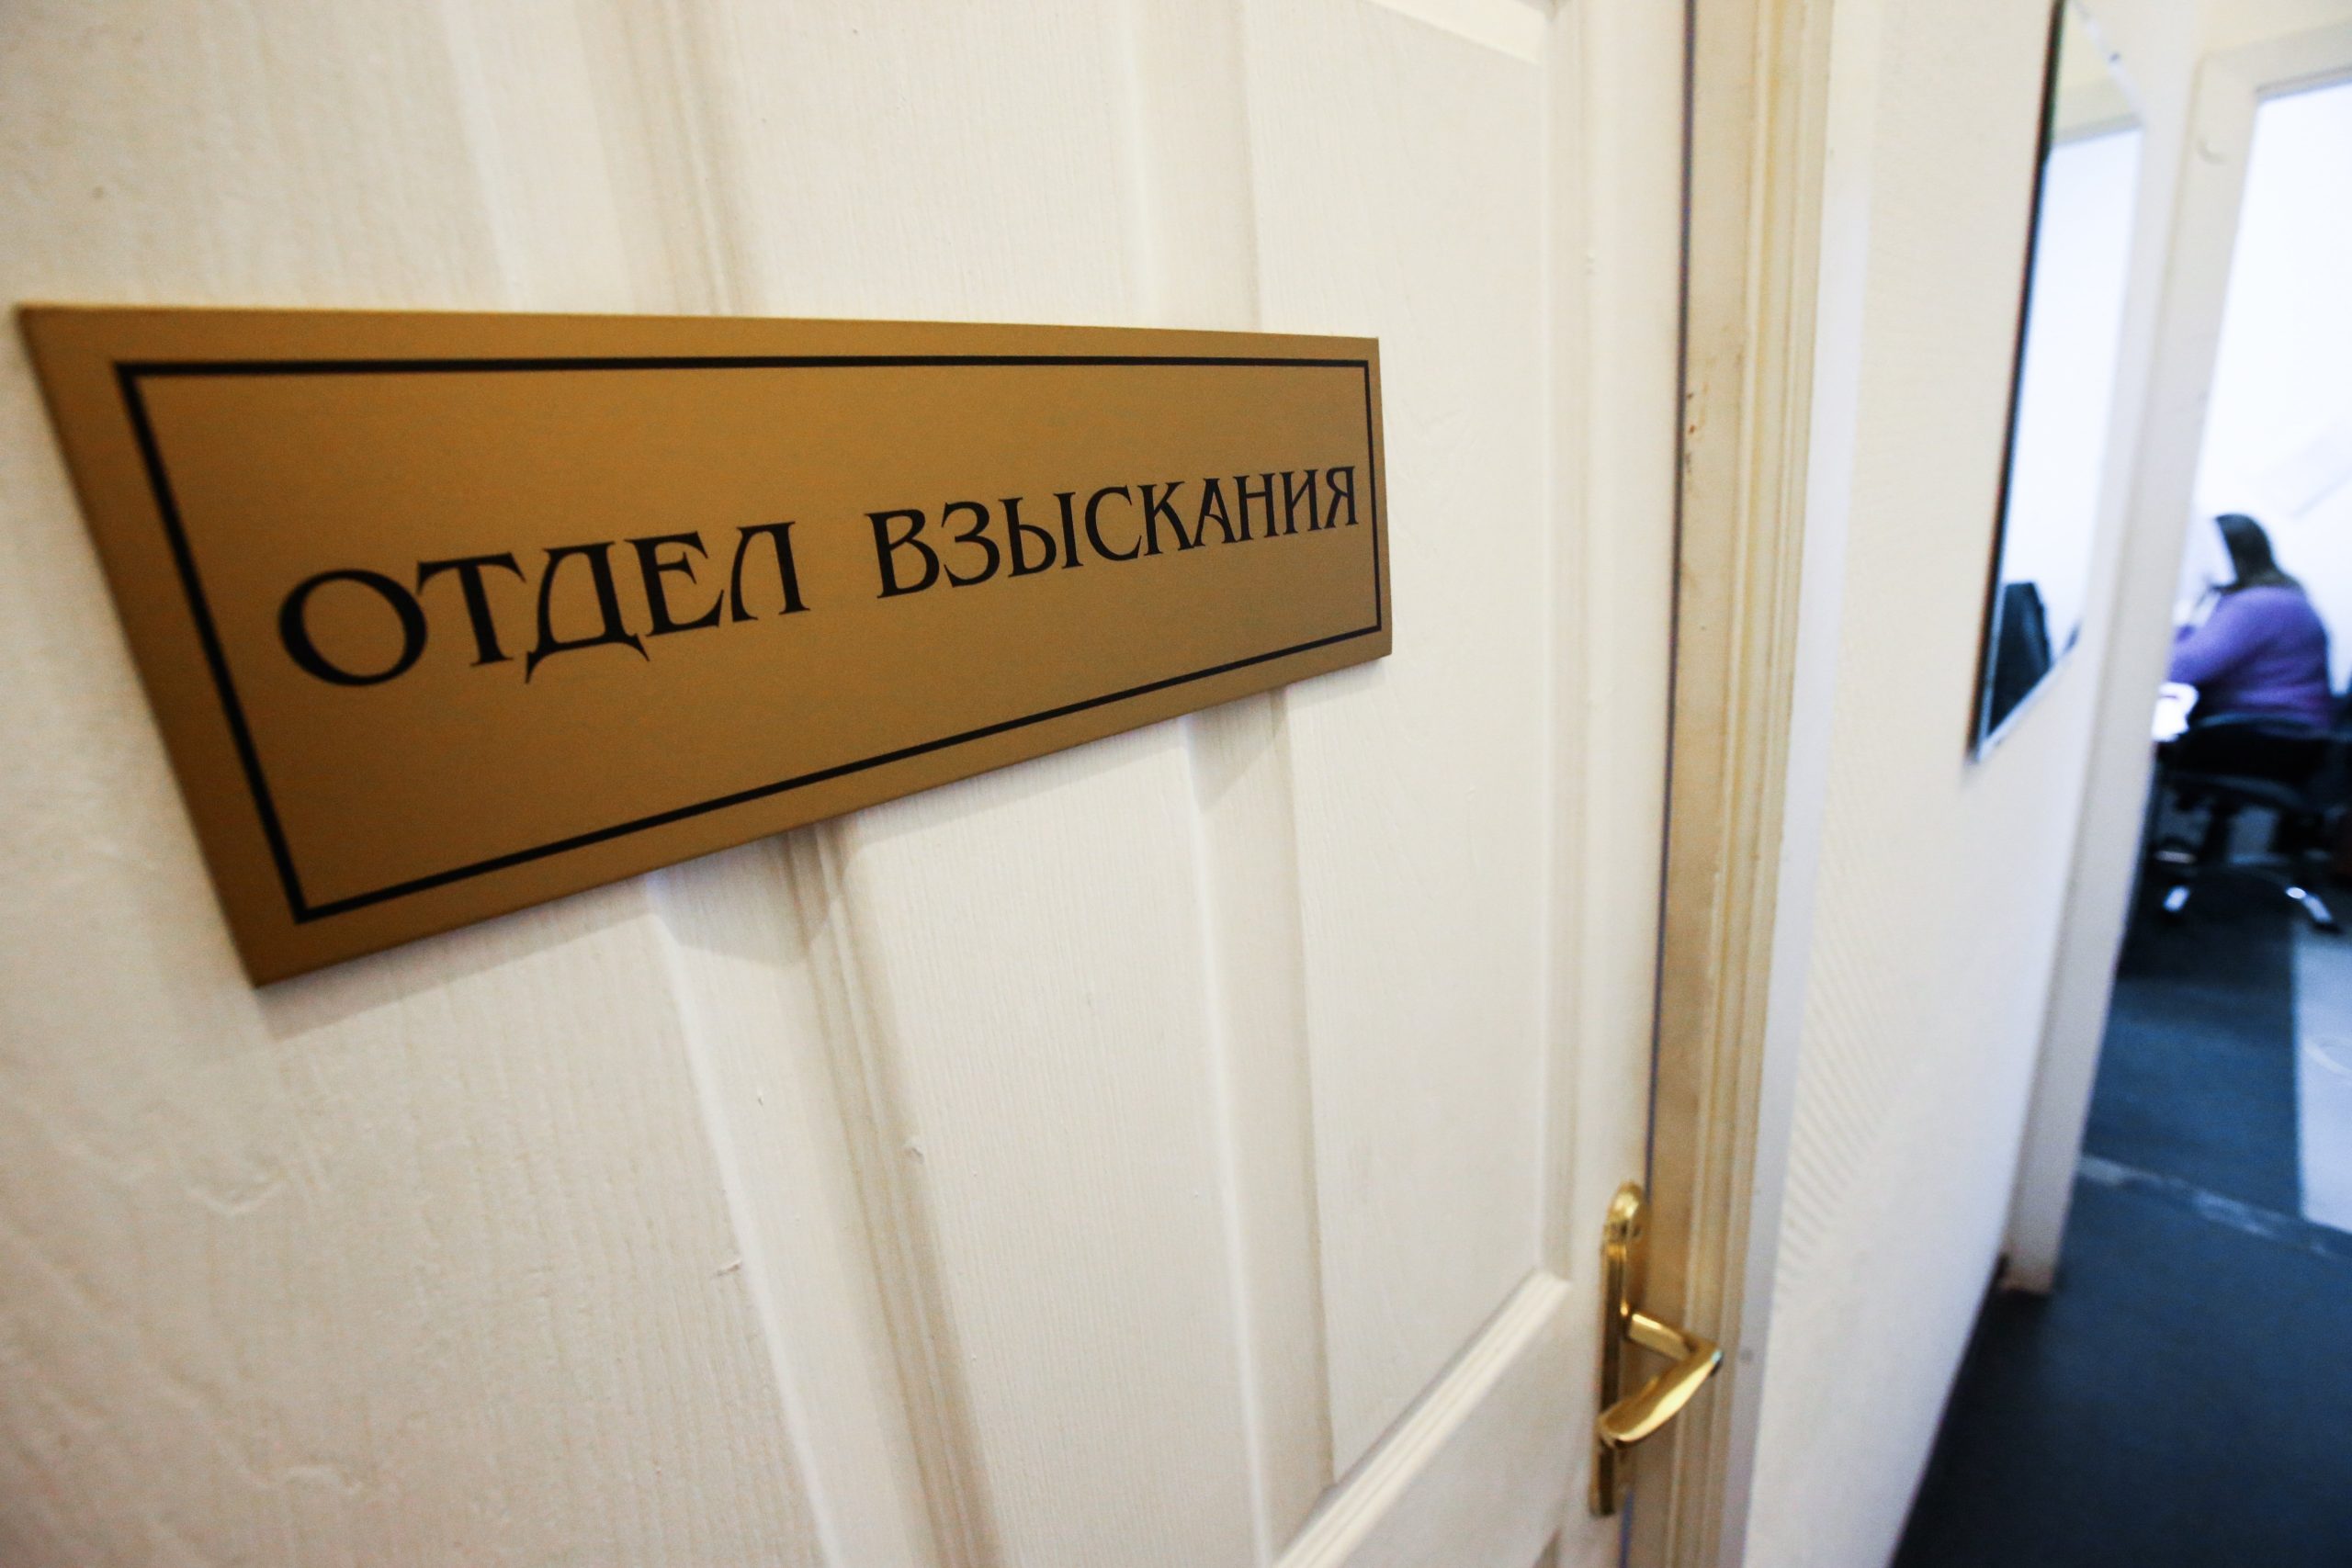 Беломорский районный суд защитил права потребителя и взыскал с ответчика свыше ста тысяч рублей